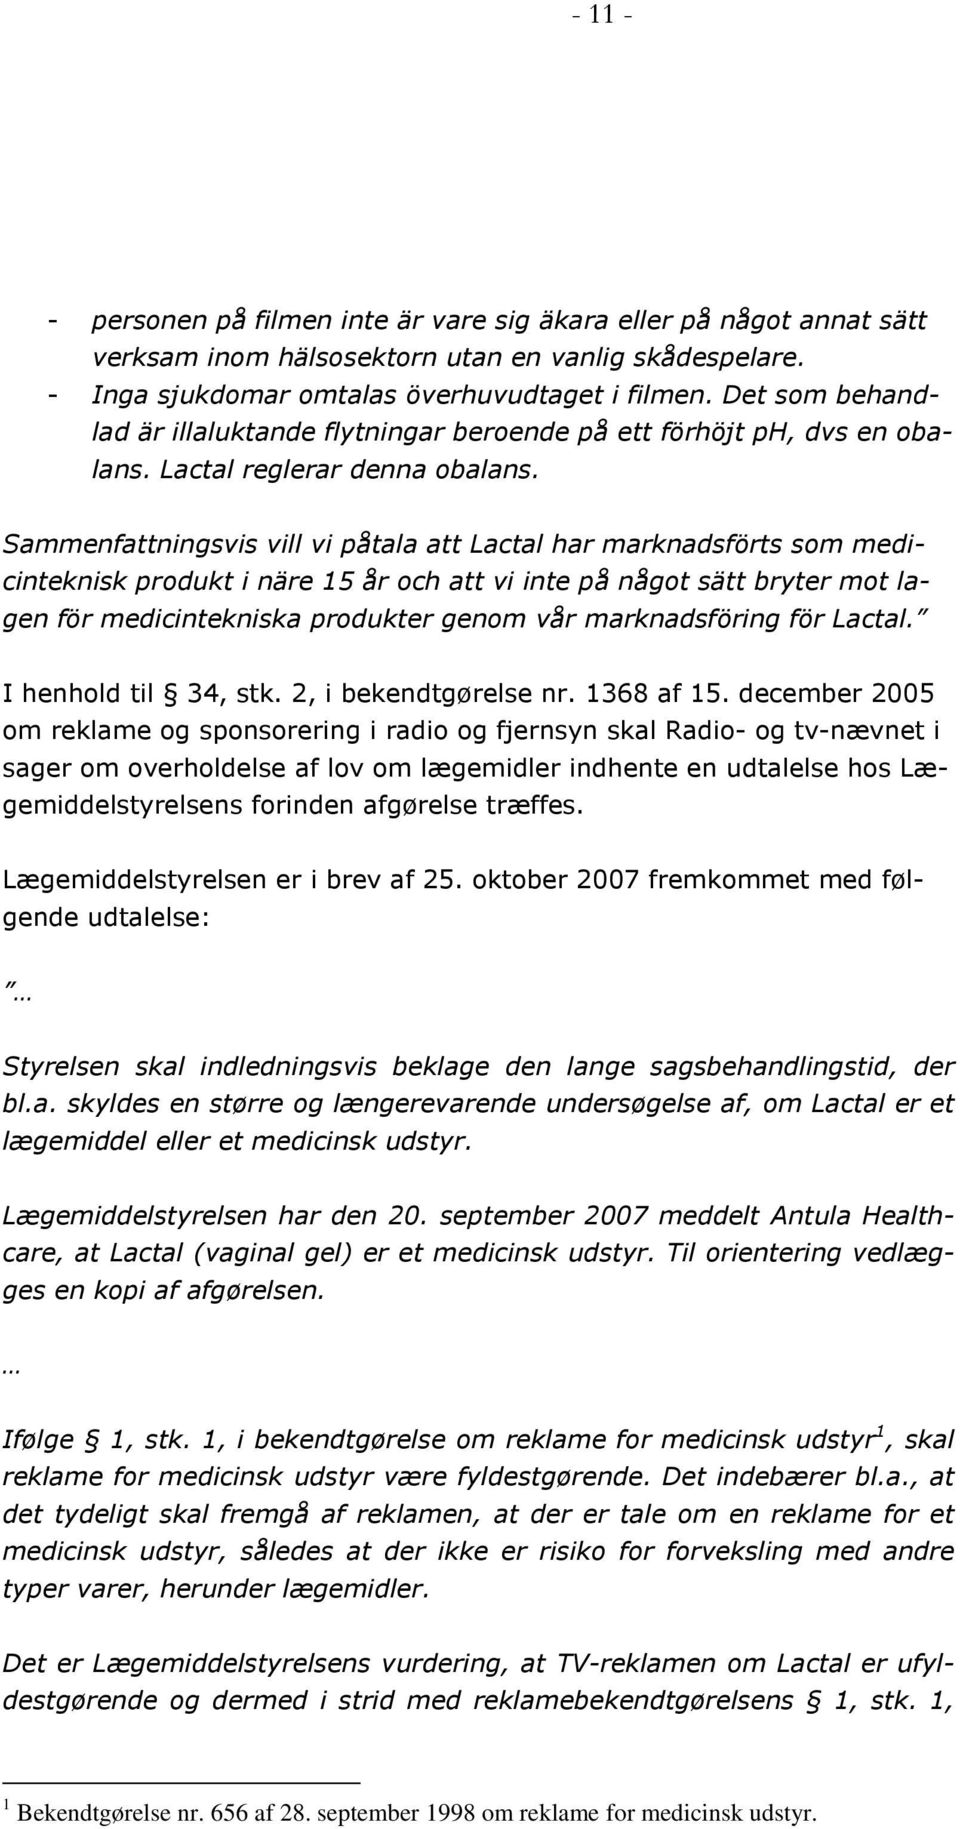 Sammenfattningsvis vill vi påtala att Lactal har marknadsförts som medicinteknisk produkt i näre 15 år och att vi inte på något sätt bryter mot lagen för medicintekniska produkter genom vår